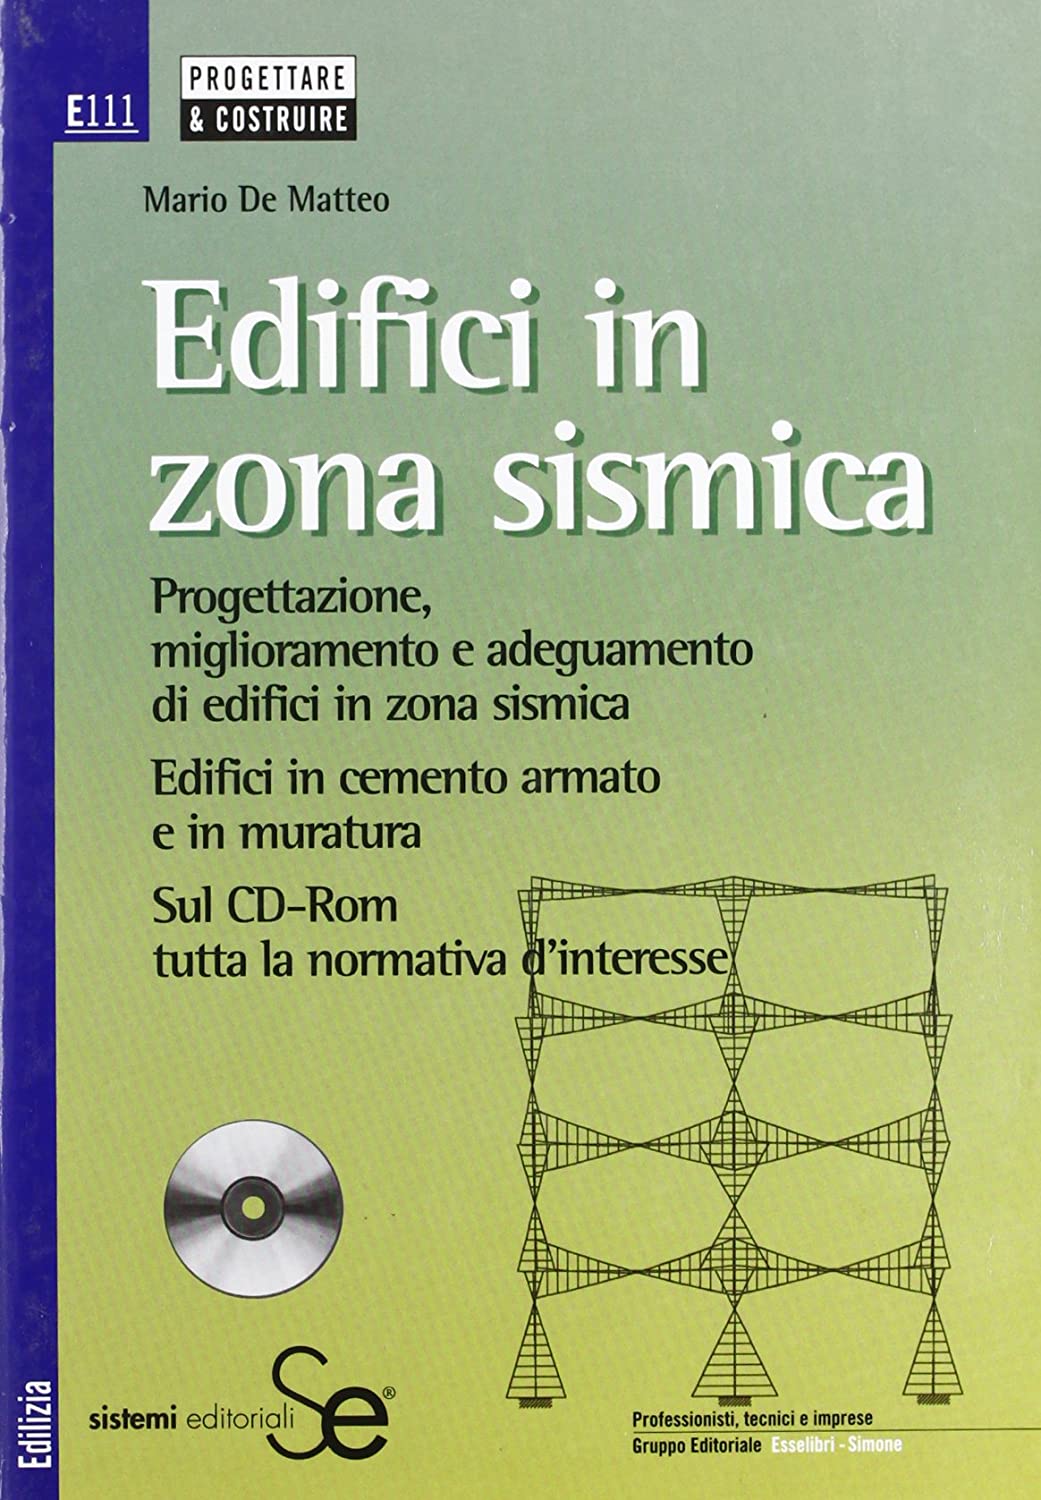 Libri De Matteo Mario - Edifici In Zona Sismica. Con CD-ROM NUOVO SIGILLATO, EDIZIONE DEL 01/07/2006 SUBITO DISPONIBILE